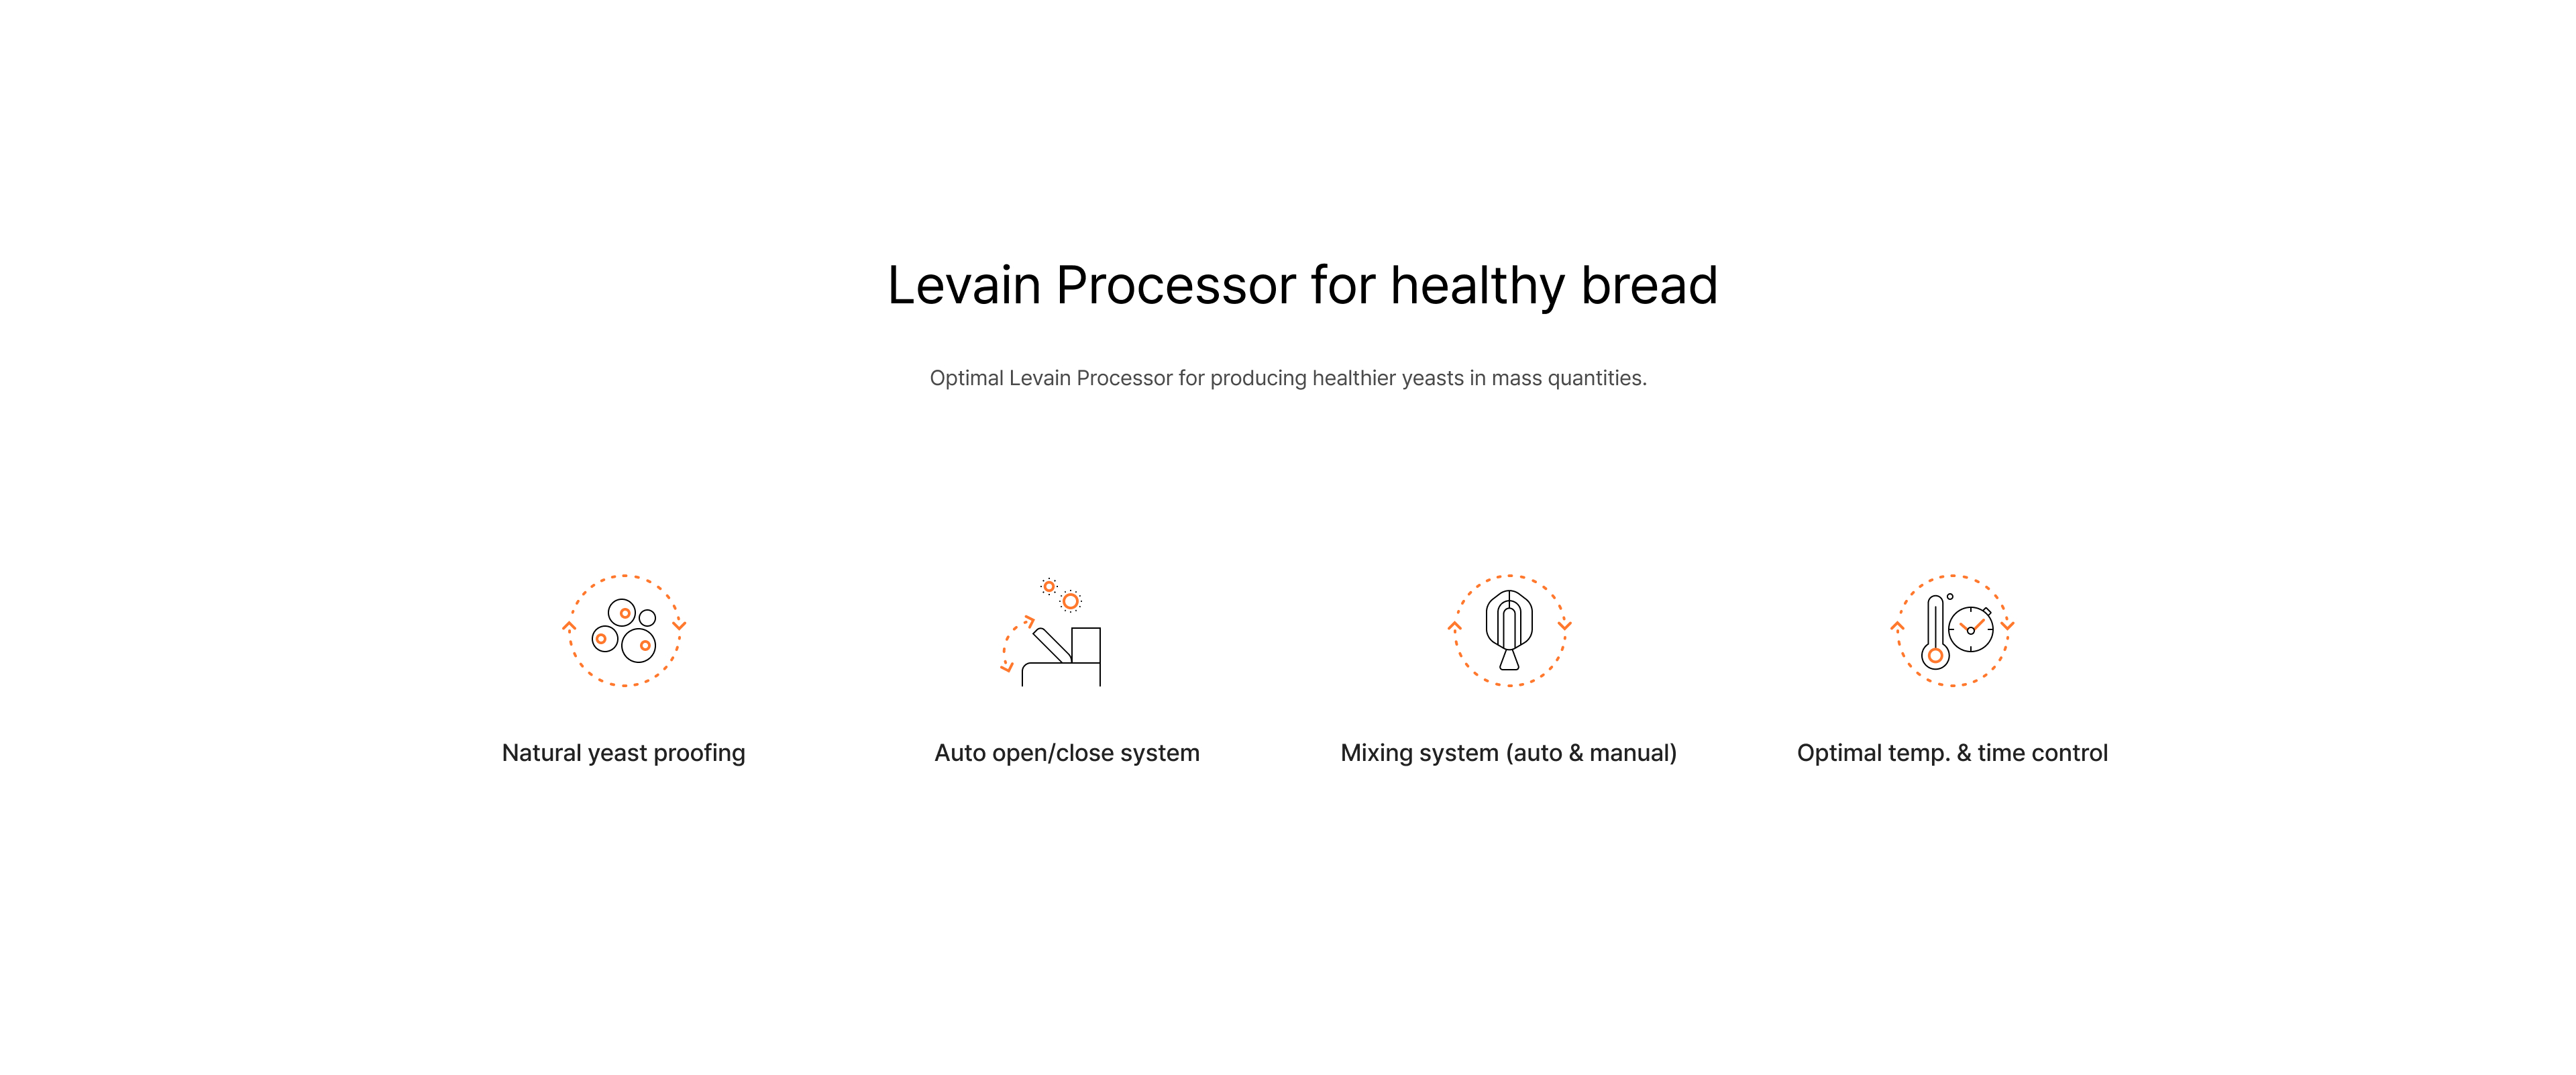 Levain Processor 60 Description iamges